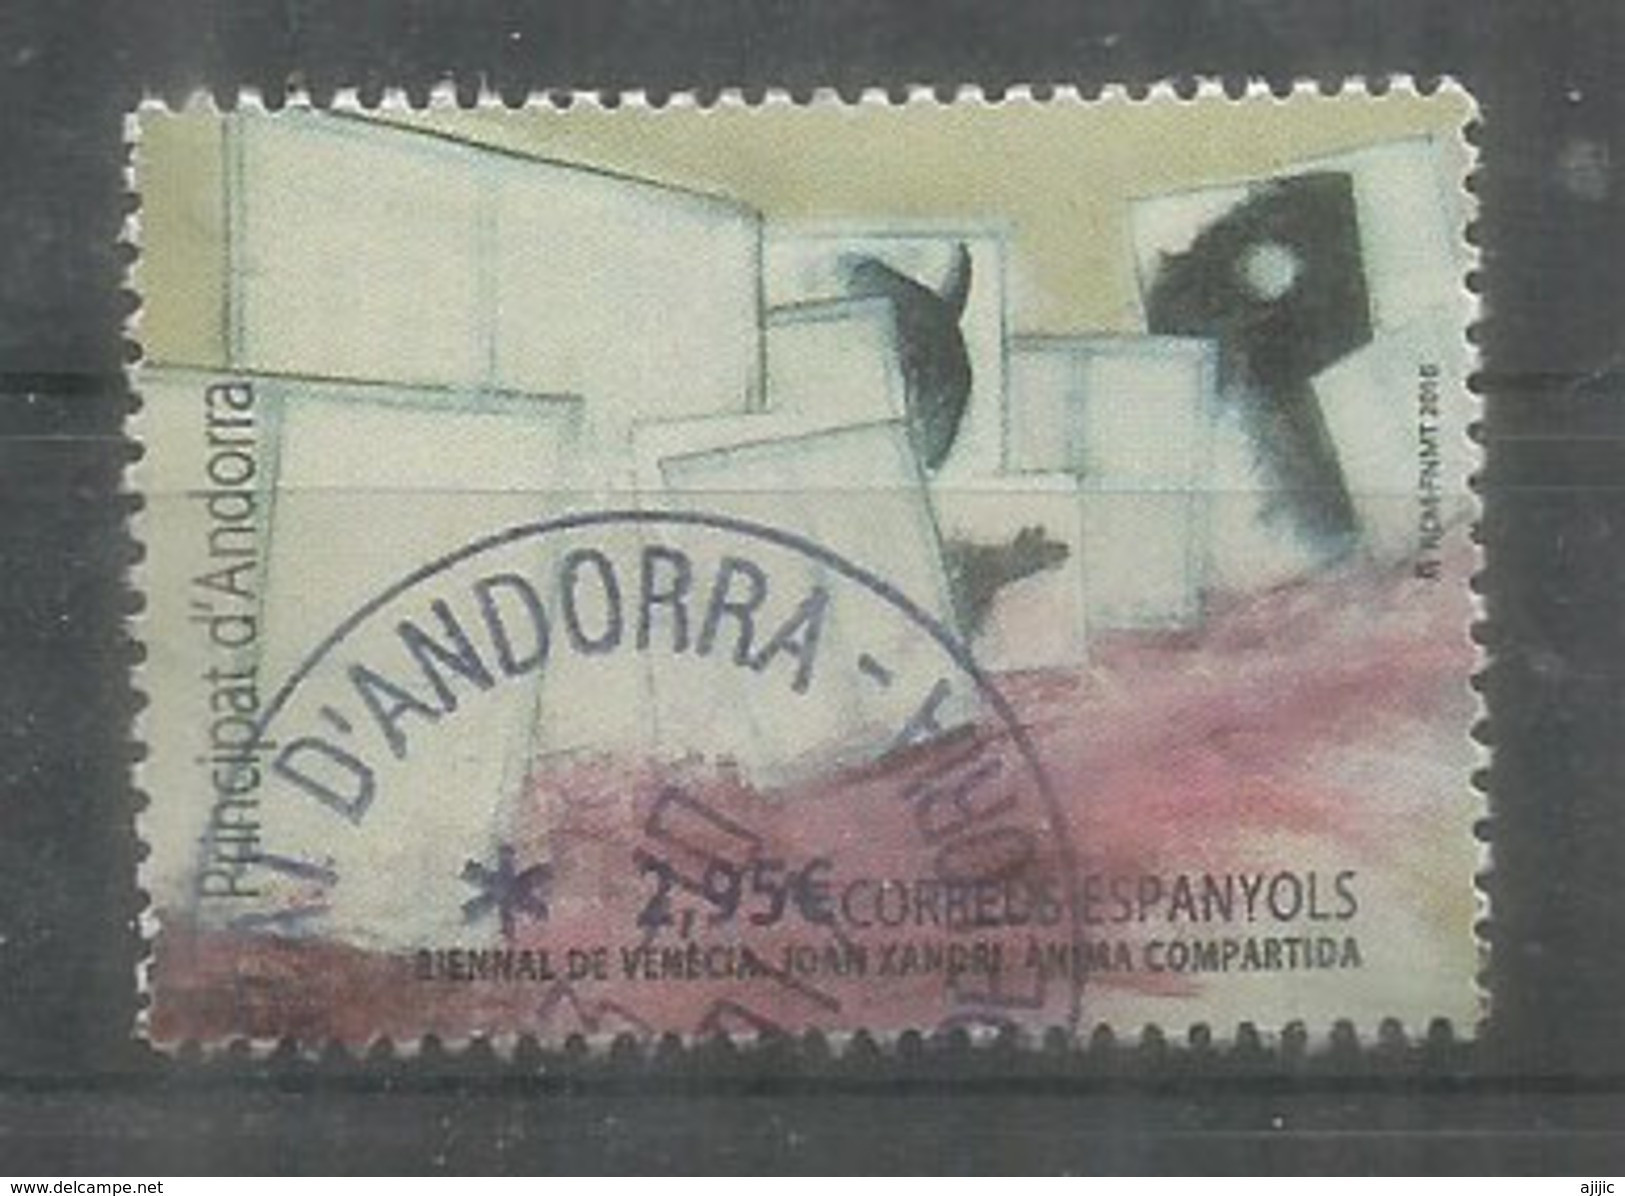 Exposition Internationale D'Art De La Cité De Venise (Biennale 2016),un Timbre Oblitéré, 1 ère Qualité D'Andorra Español - Used Stamps